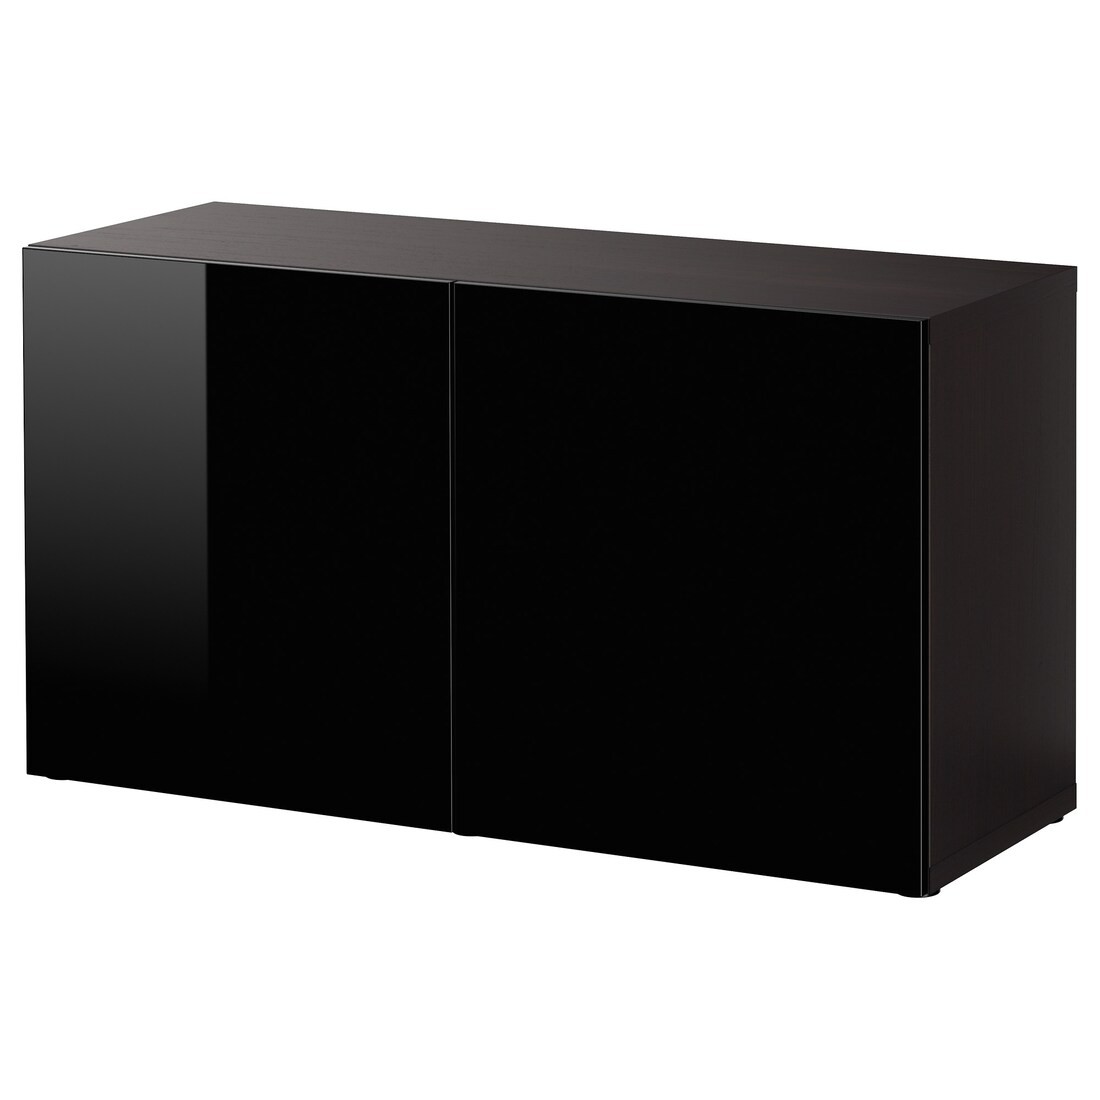 IKEA BESTÅ БЕСТО Шкаф с дверьми, черно-коричневый / Selsviken глянцевый / черный, 120x42x64 см 59047449 590.474.49